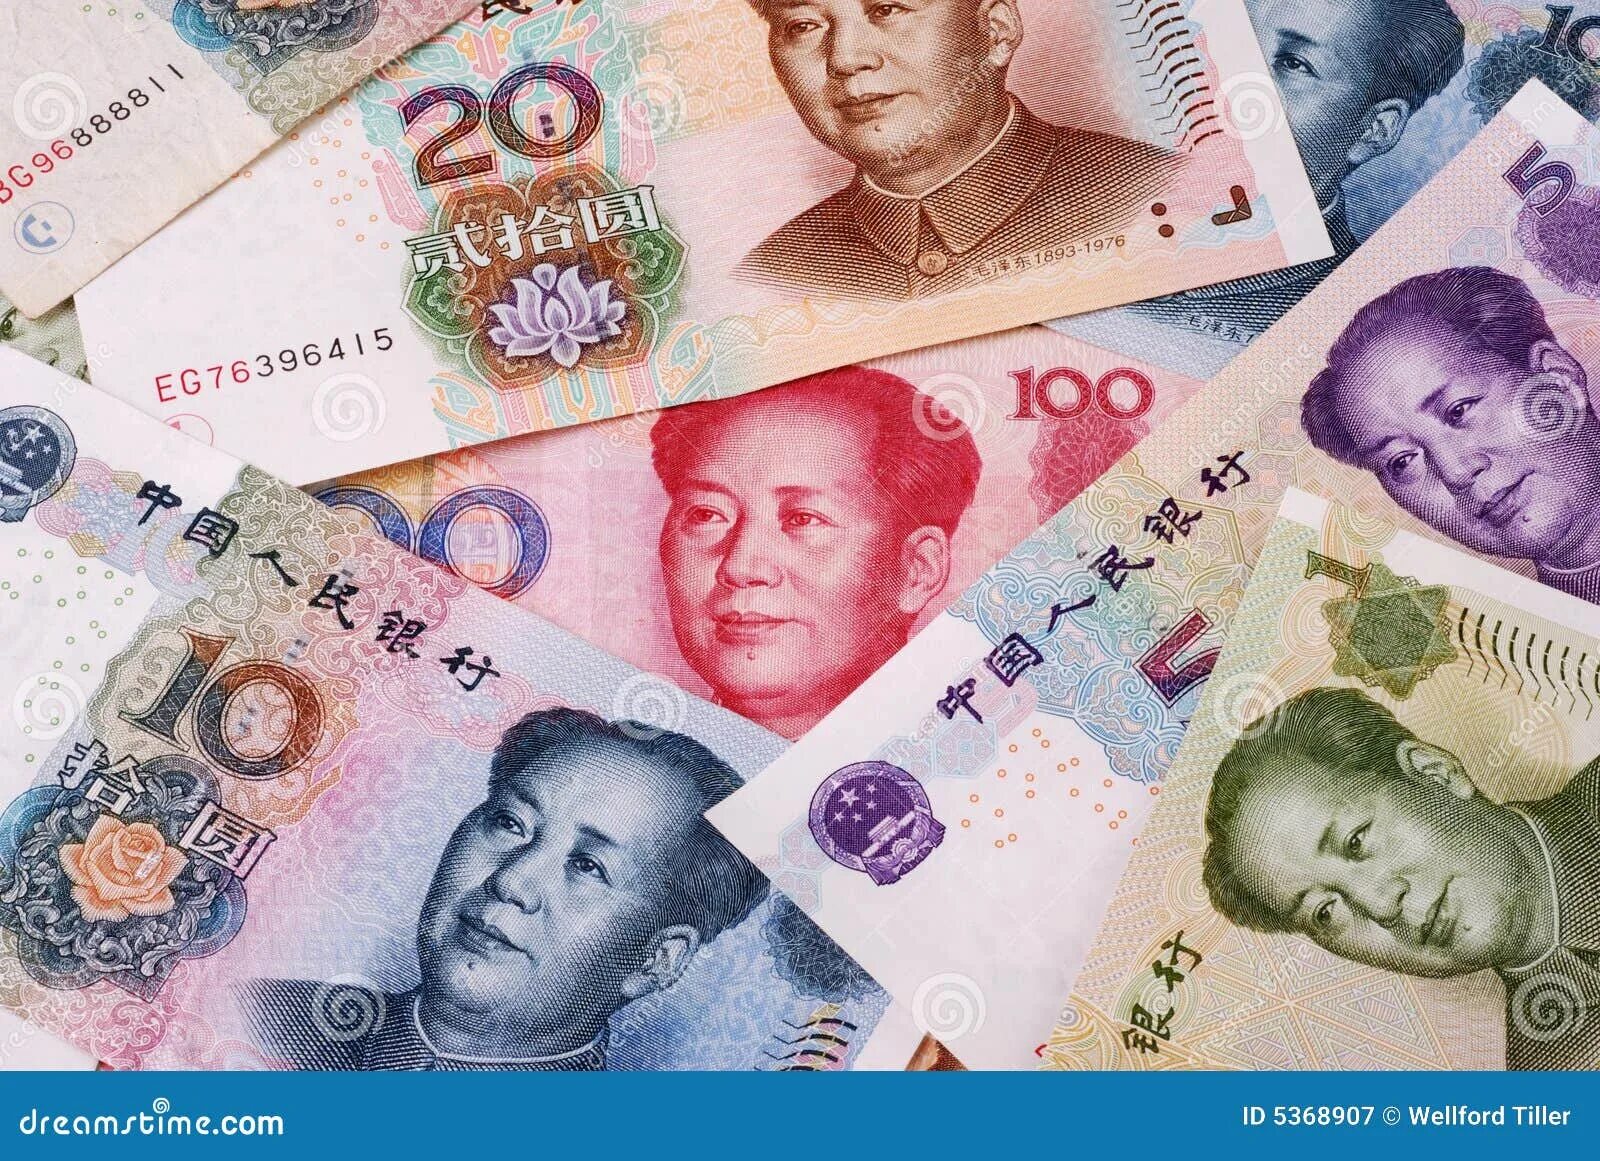 Обменять китайские юани. Китайский юань. Китайская валюта. Валюта Китая. Юань (валюта).